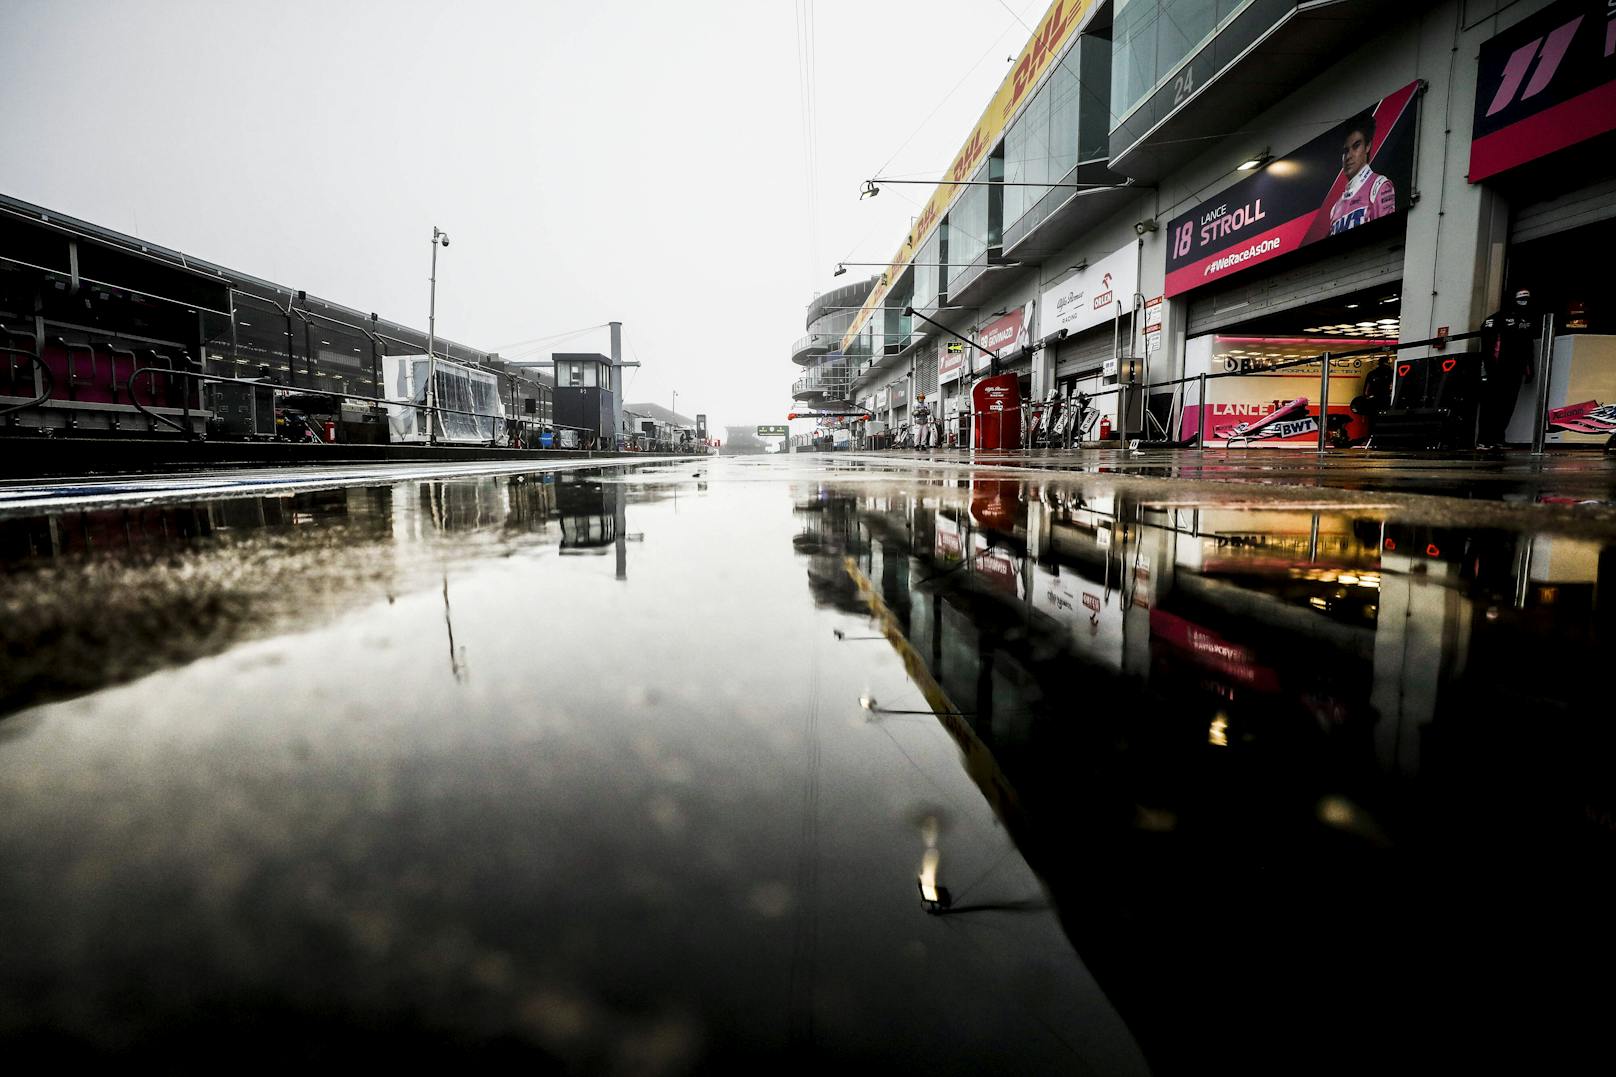 Fällt das gesamte Formel-1-Wochenende auf dem Nürburgring ins Wasser? 